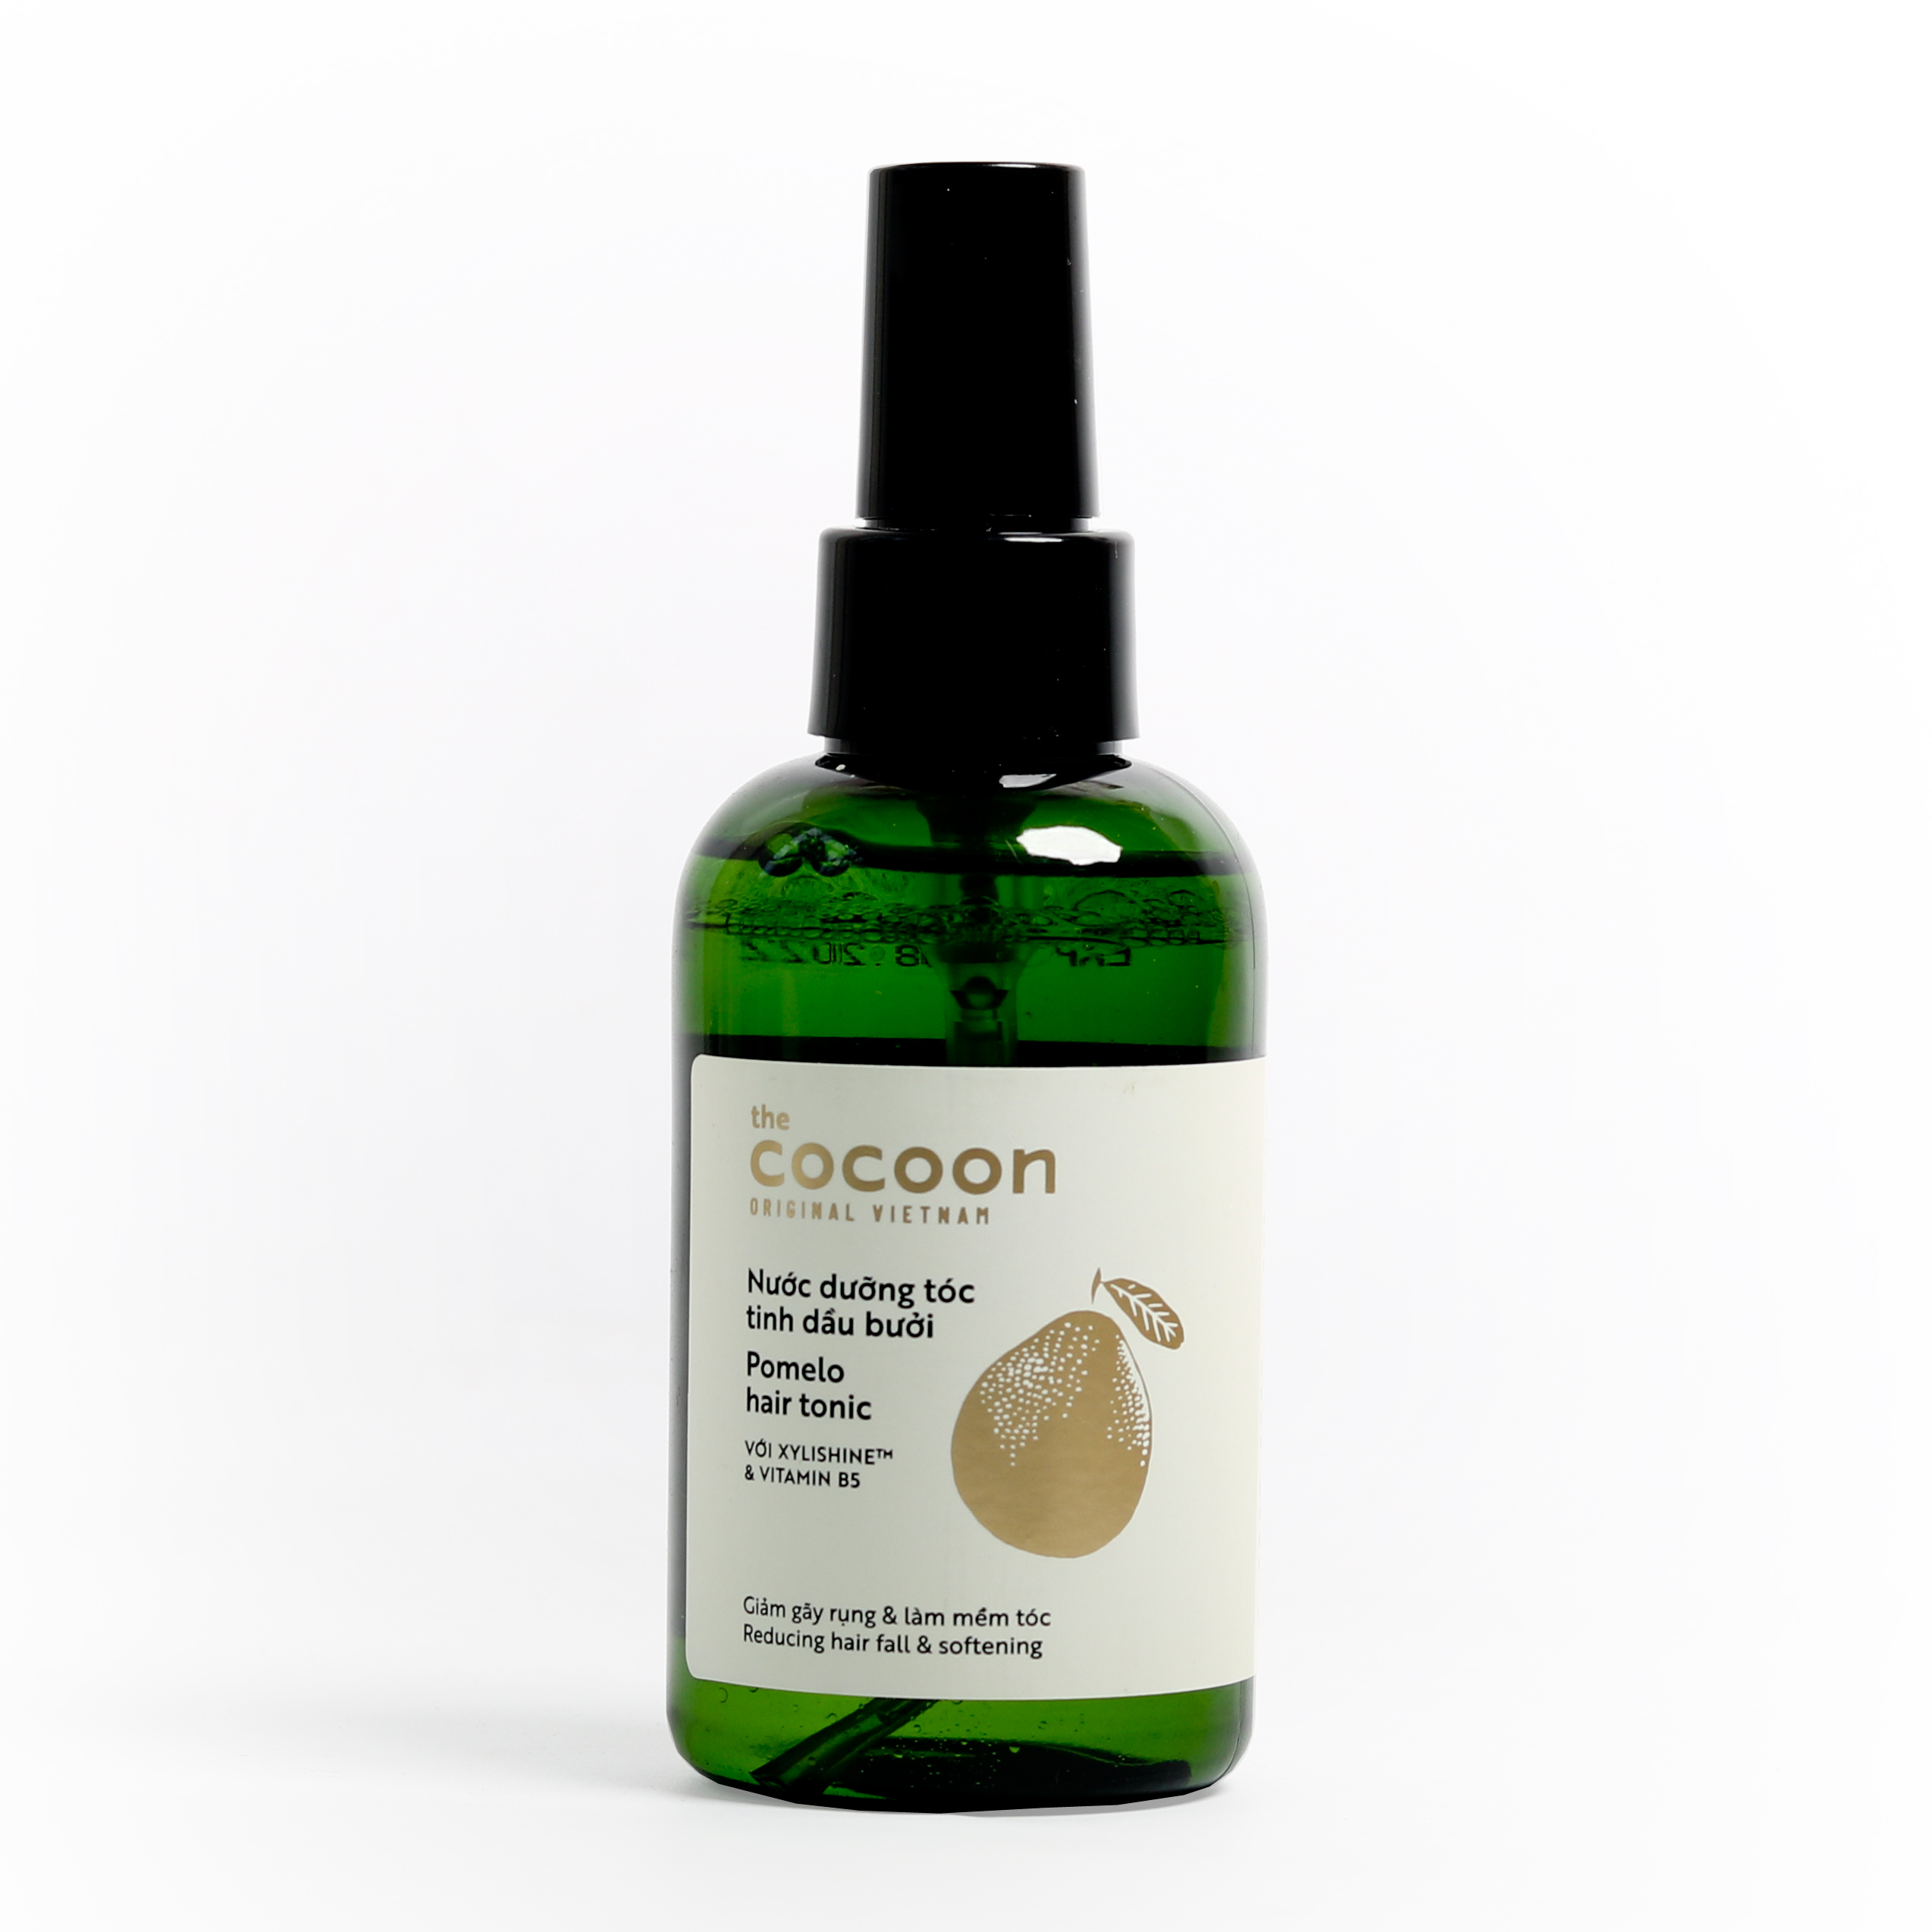 Nước dưỡng tóc tinh dầu bưởi (Pomelo hair tonic) Cocoon 140ml